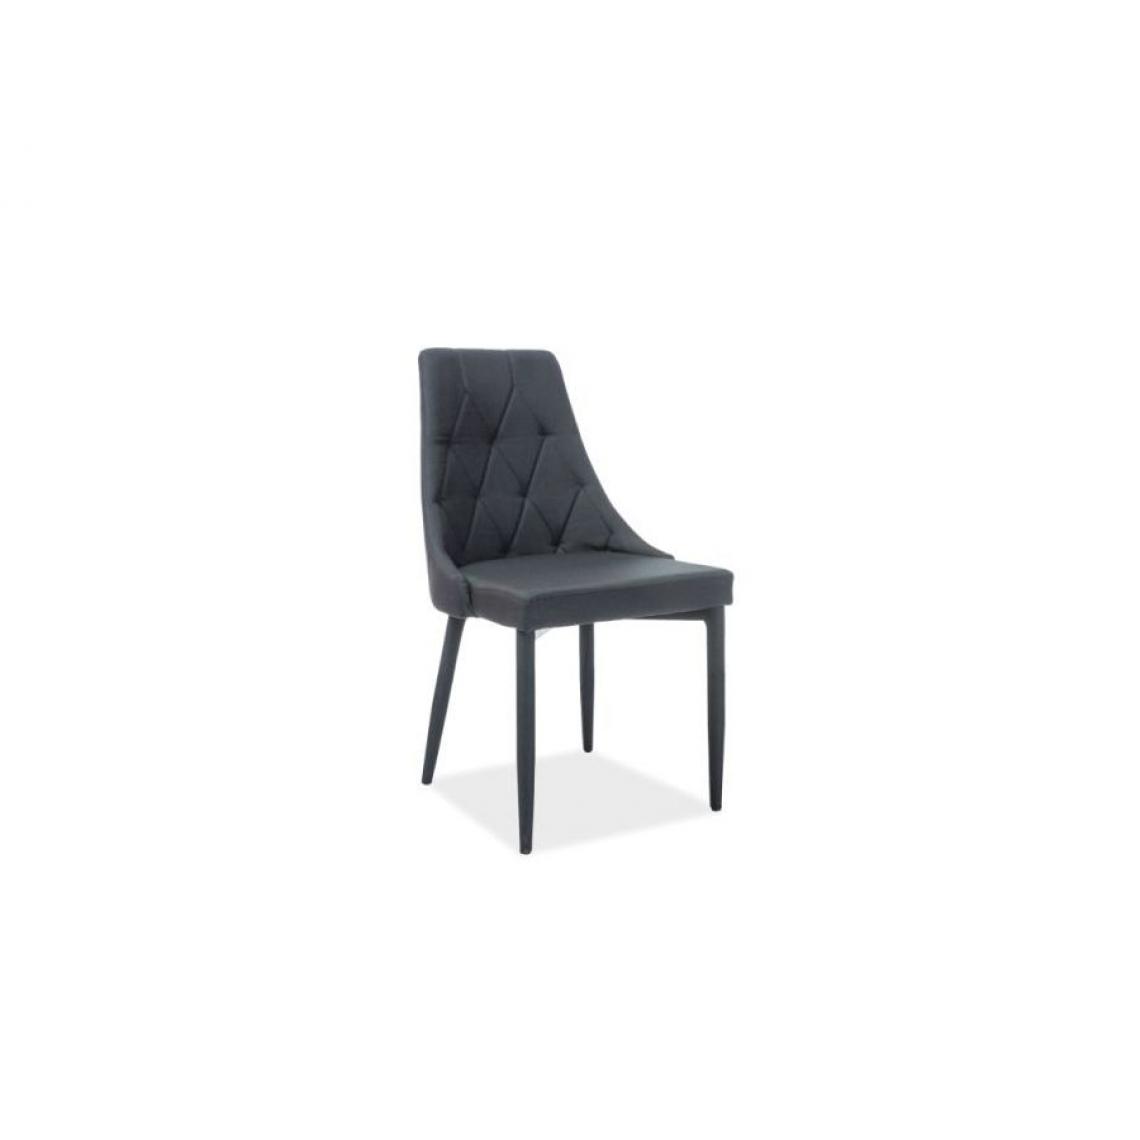 Hucoco - TRIB | Chaise moderne de style scandinave | Dimensions 88x46x46 cm | Rembourrée en tissu | Structure en métal rembourrée - Noir - Chaises